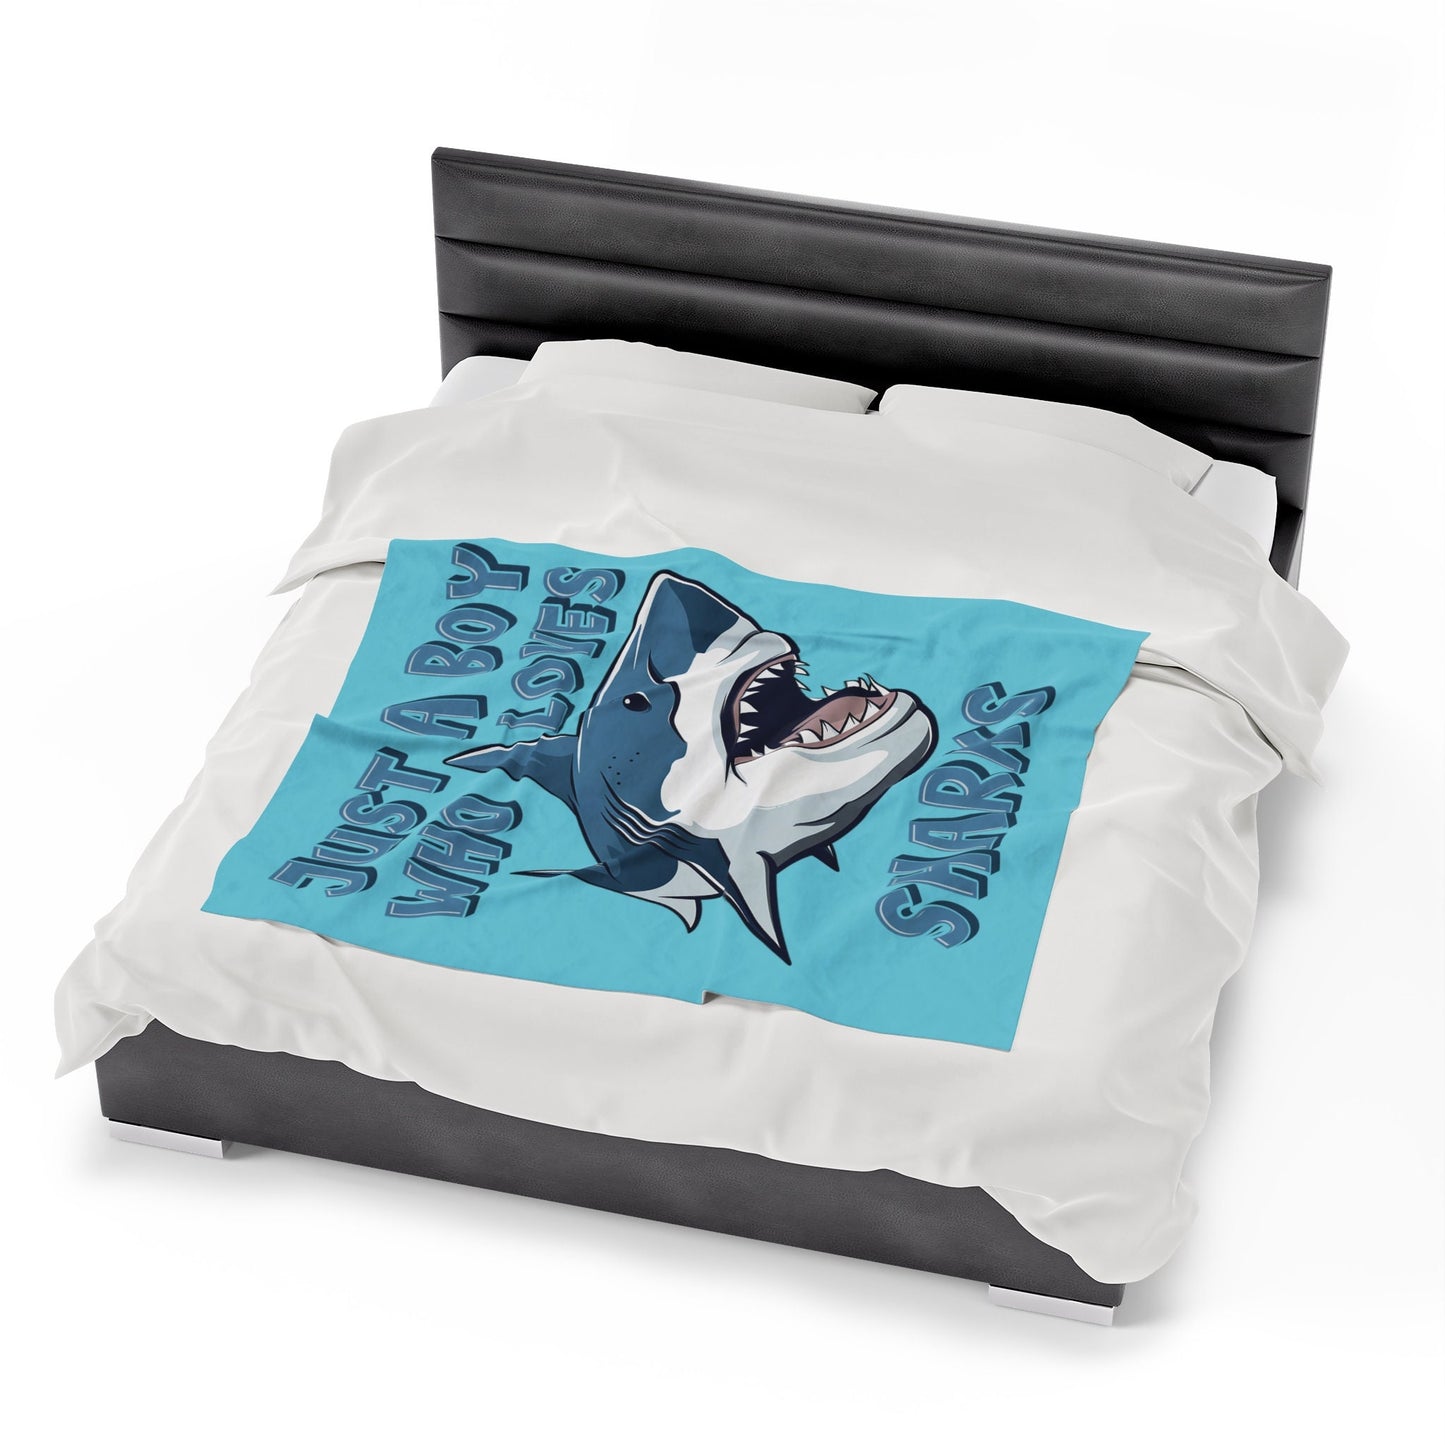 Just A Boy Who Loves Sharks Blanket, Plush Velveteen Throw Blanket, Shark Gift for Boy, Birthday Boy Gift, Ocean Lover Cozy Bed Blanket